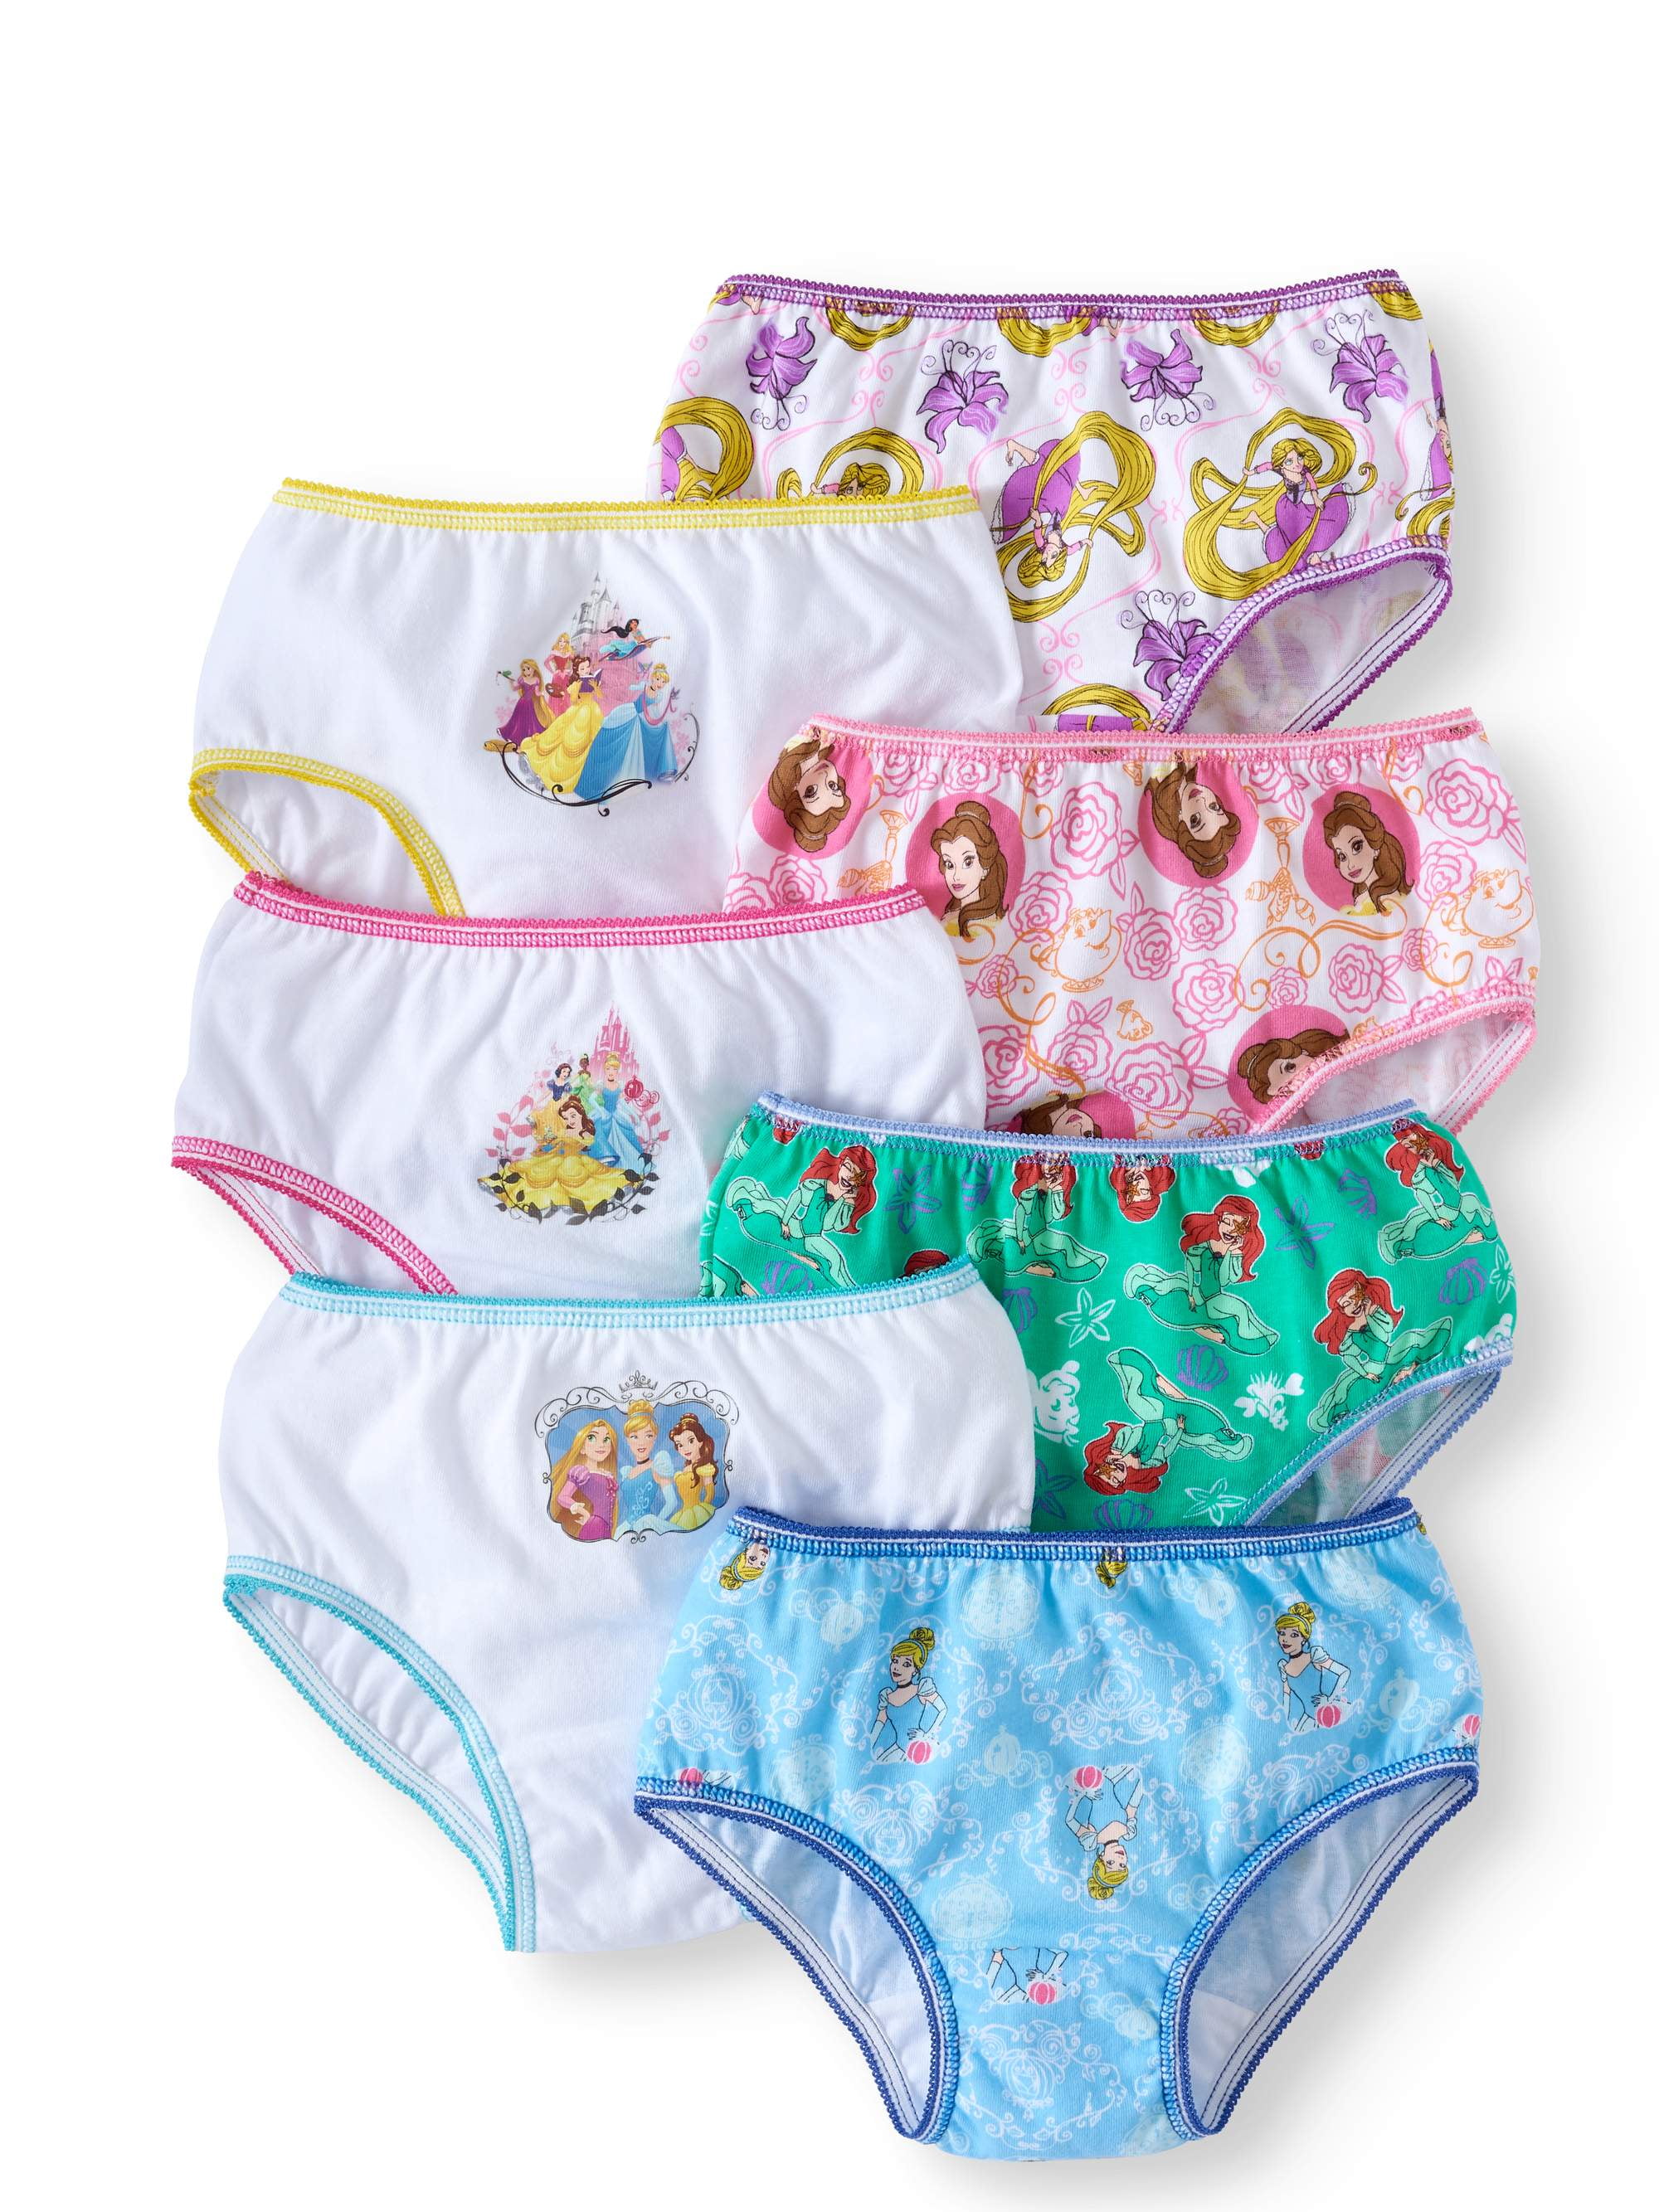 Disney Princess Girls Brief Underwear 7-Pack, Sizes 4-8 